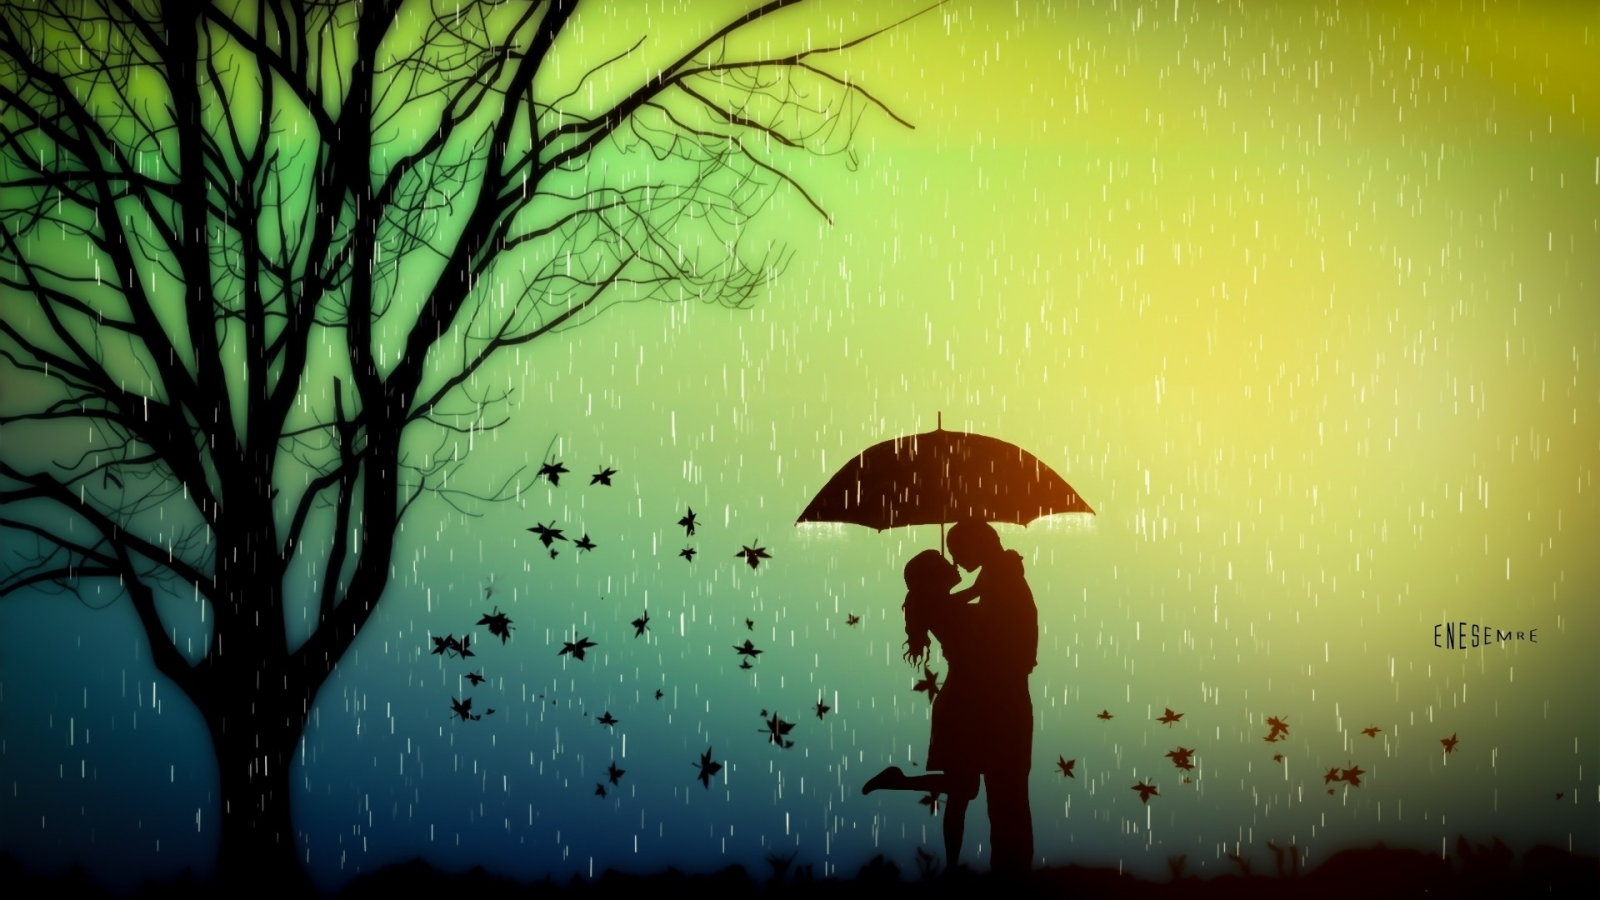 осень, двое под зонтом, влюблённые